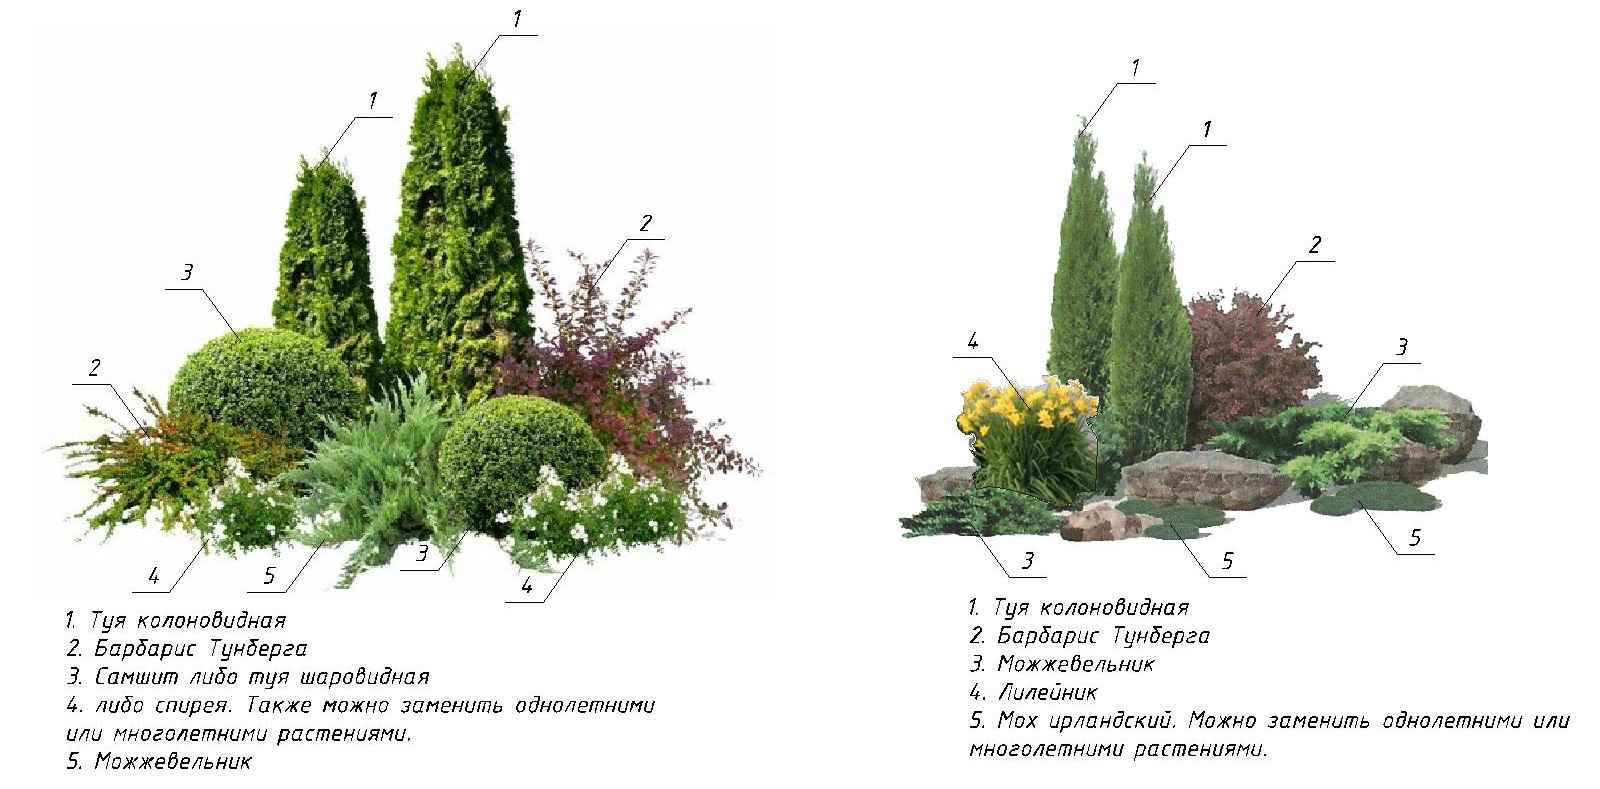 Descrição da variedade de arbustos ornamentais cuidados de plantação 002_108